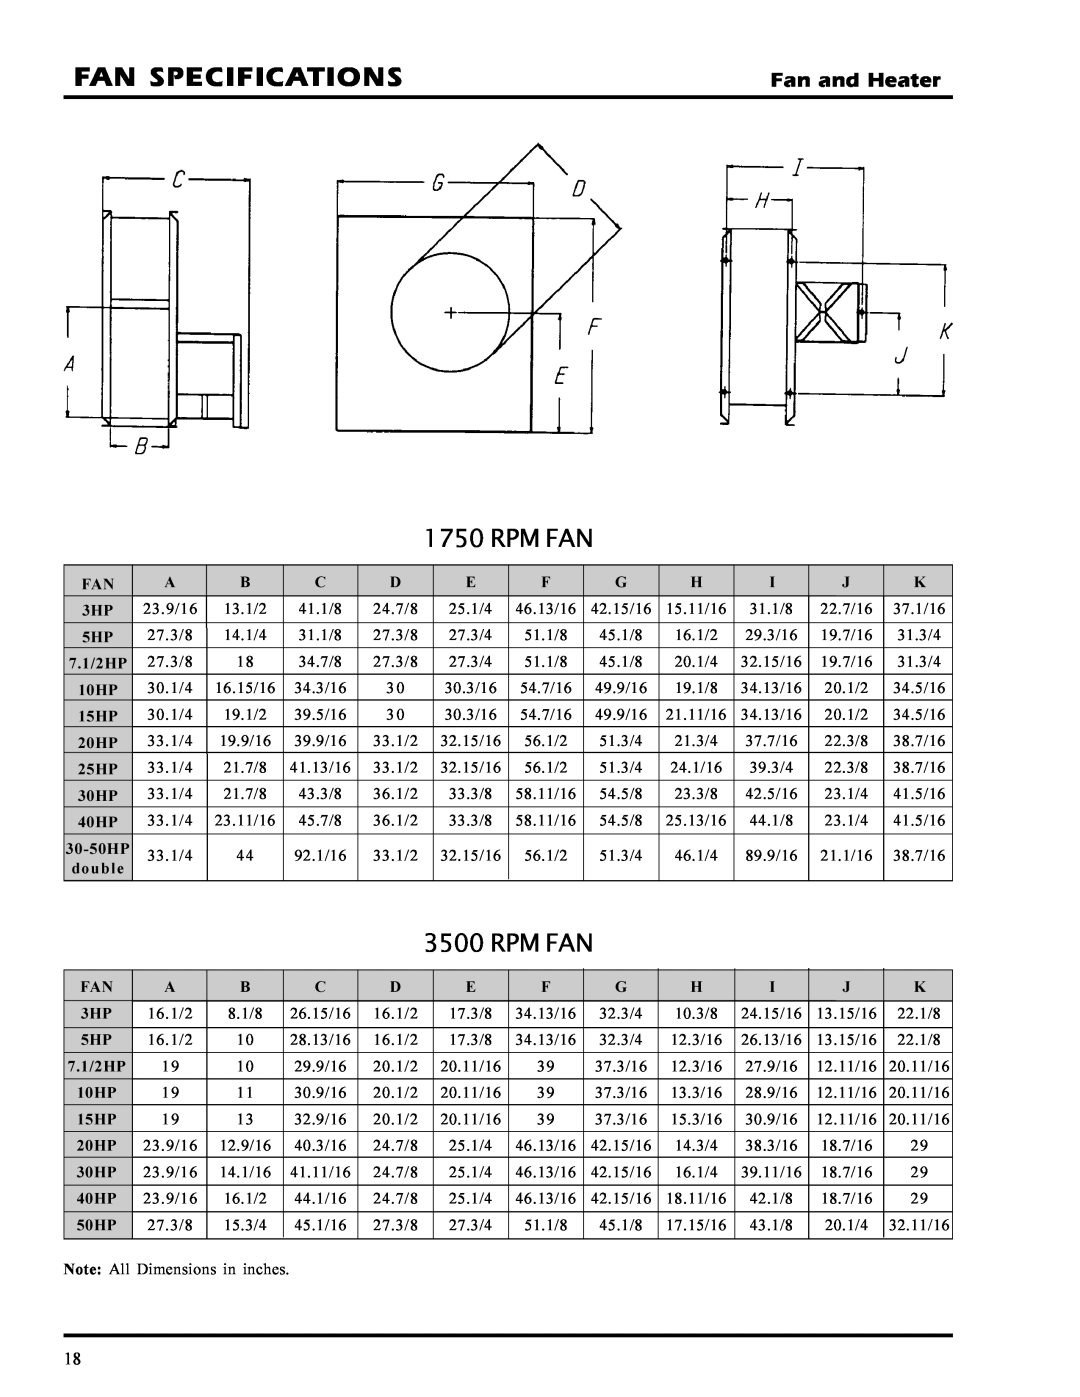 GSI Outdoors PNEG-377 service manual Fan Specifications, Rpm Fan, Fan and Heater 